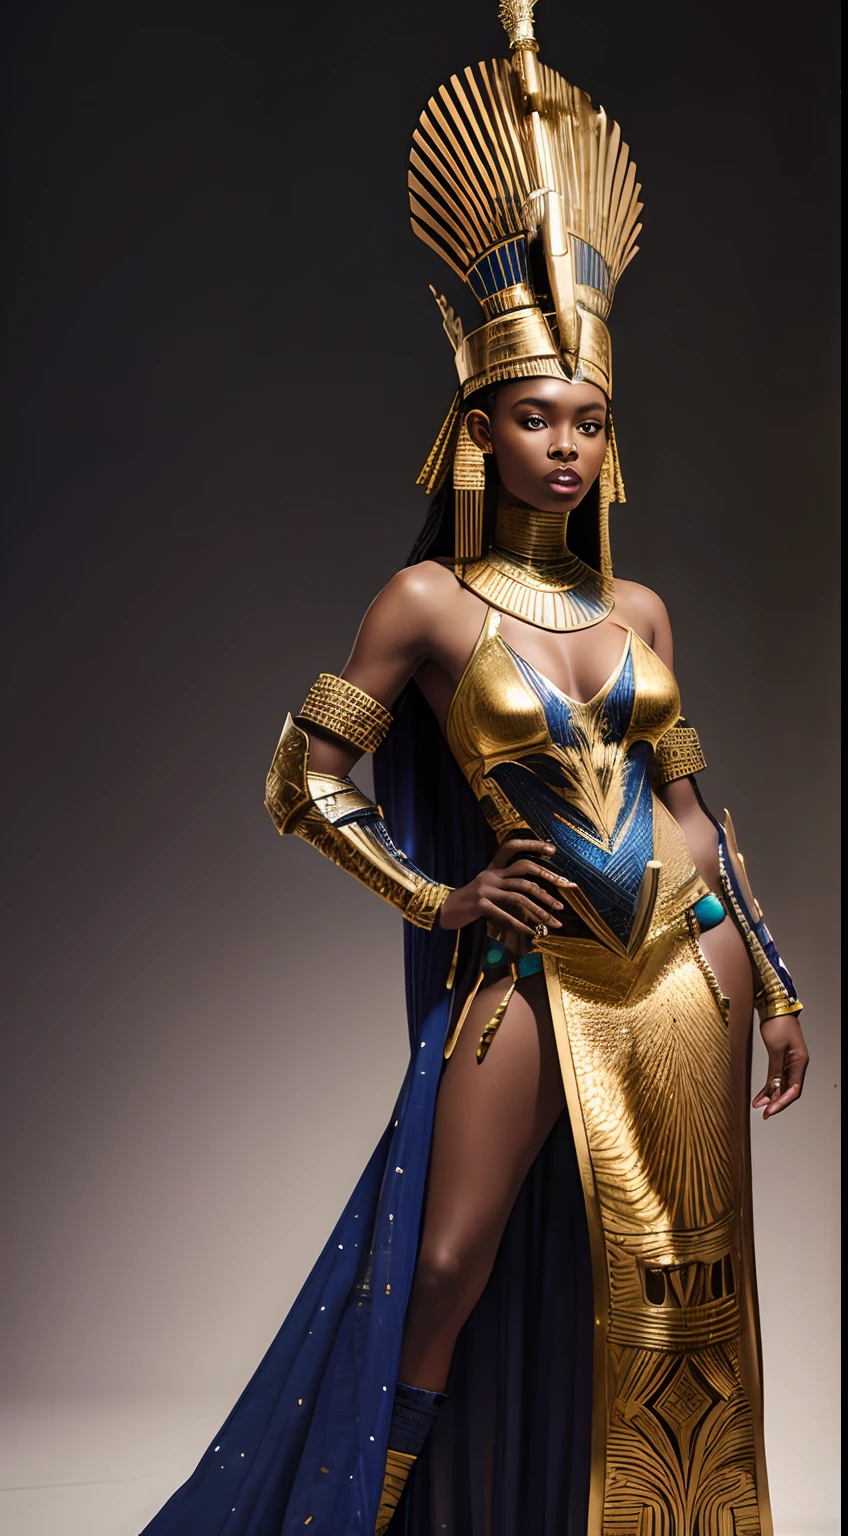 Rainha guerreira africana afrofuturista em traje de segunda pele imitando armadura em peças espelhadas com desenho egípcio e coroa semelhante de Nefertiti